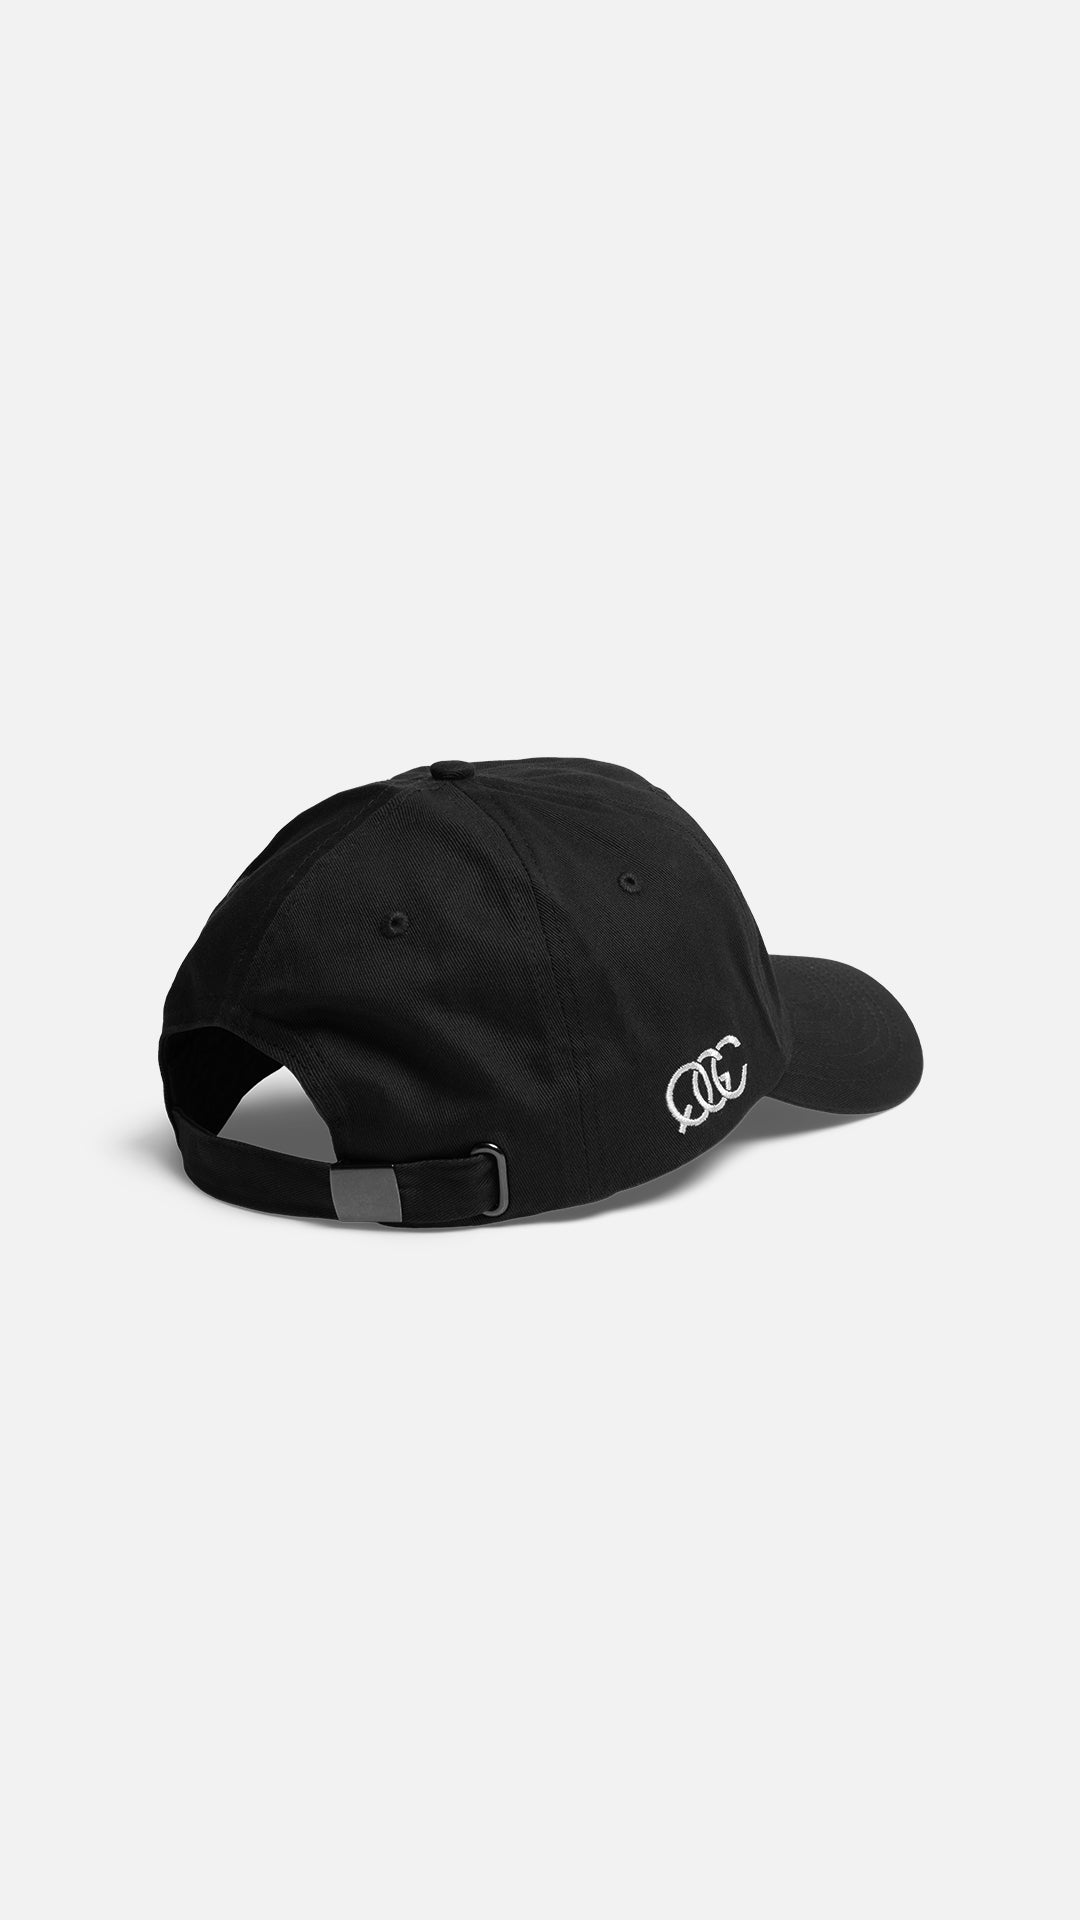 QG Tour Hat Black